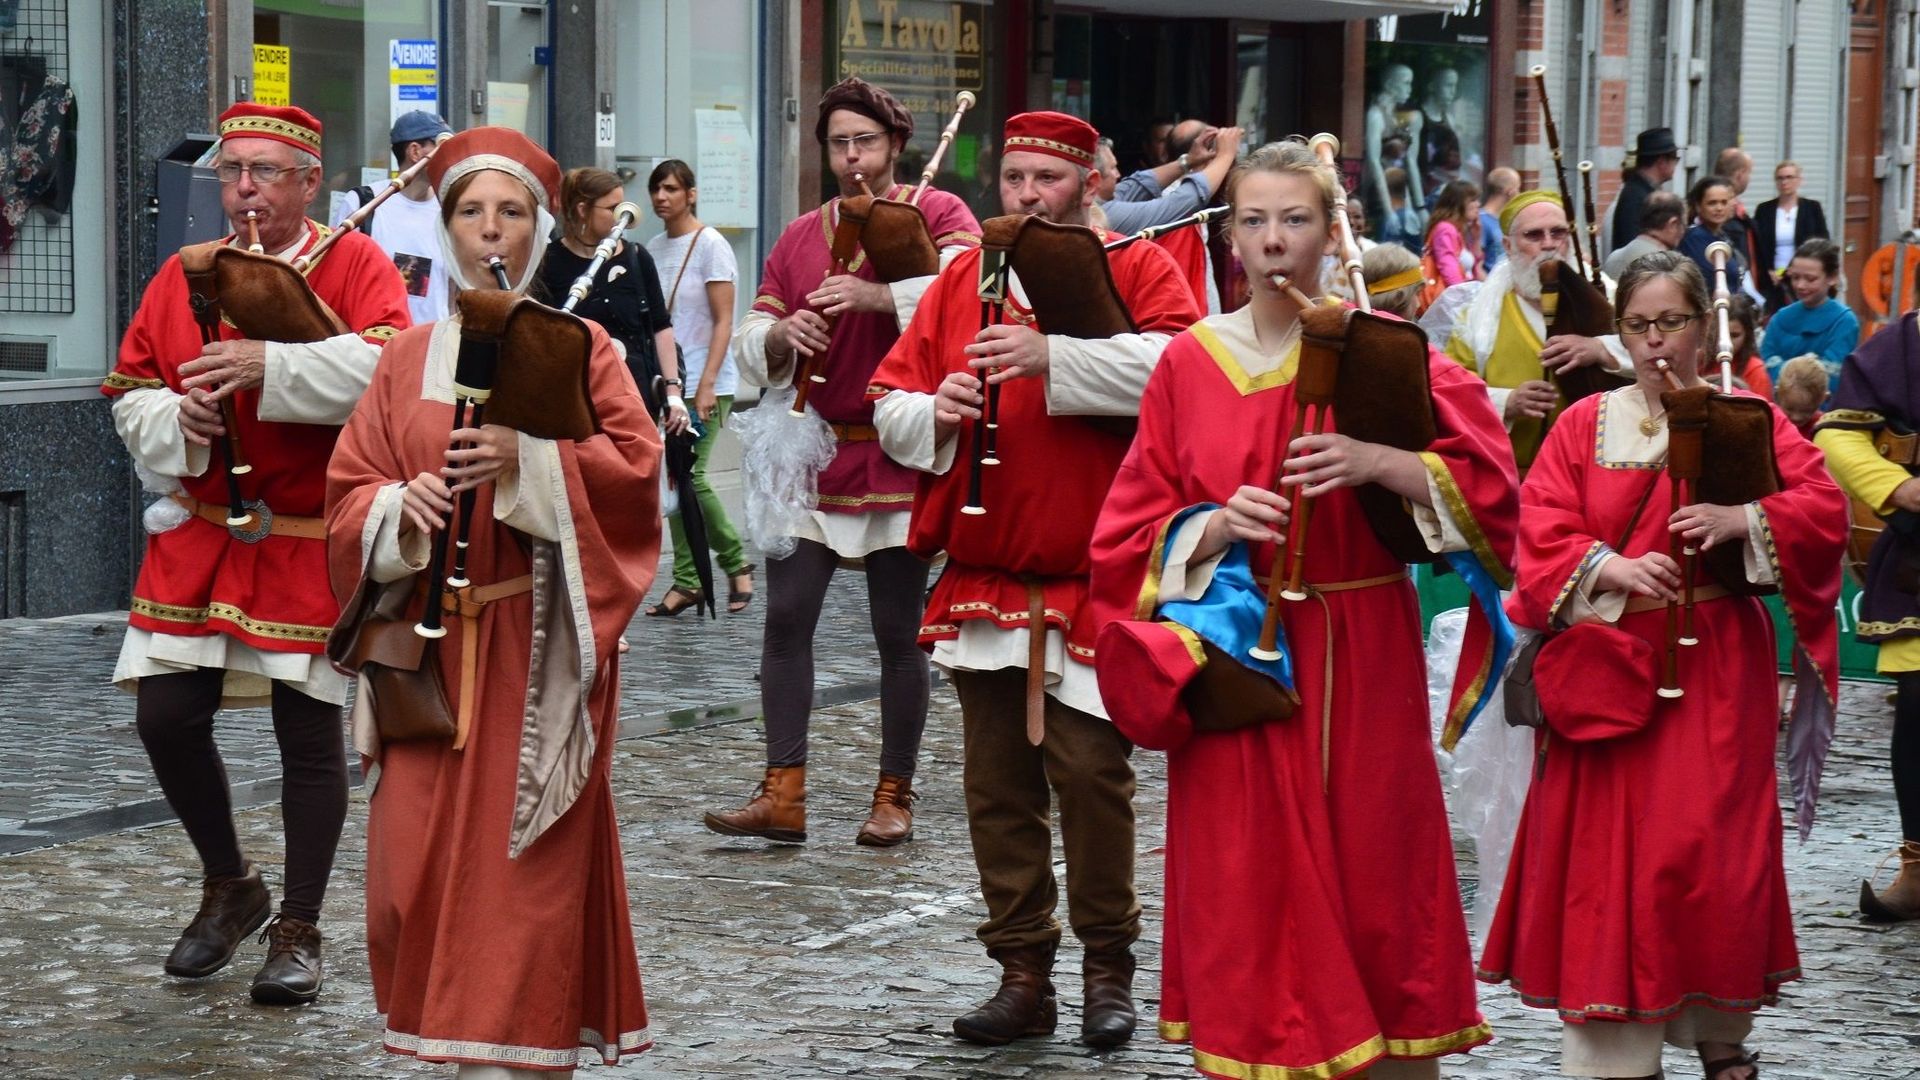 La balade de Carine : Pentecôte à Soignies - Le Tour Saint-Vincent attirera sans doute plus de monde !